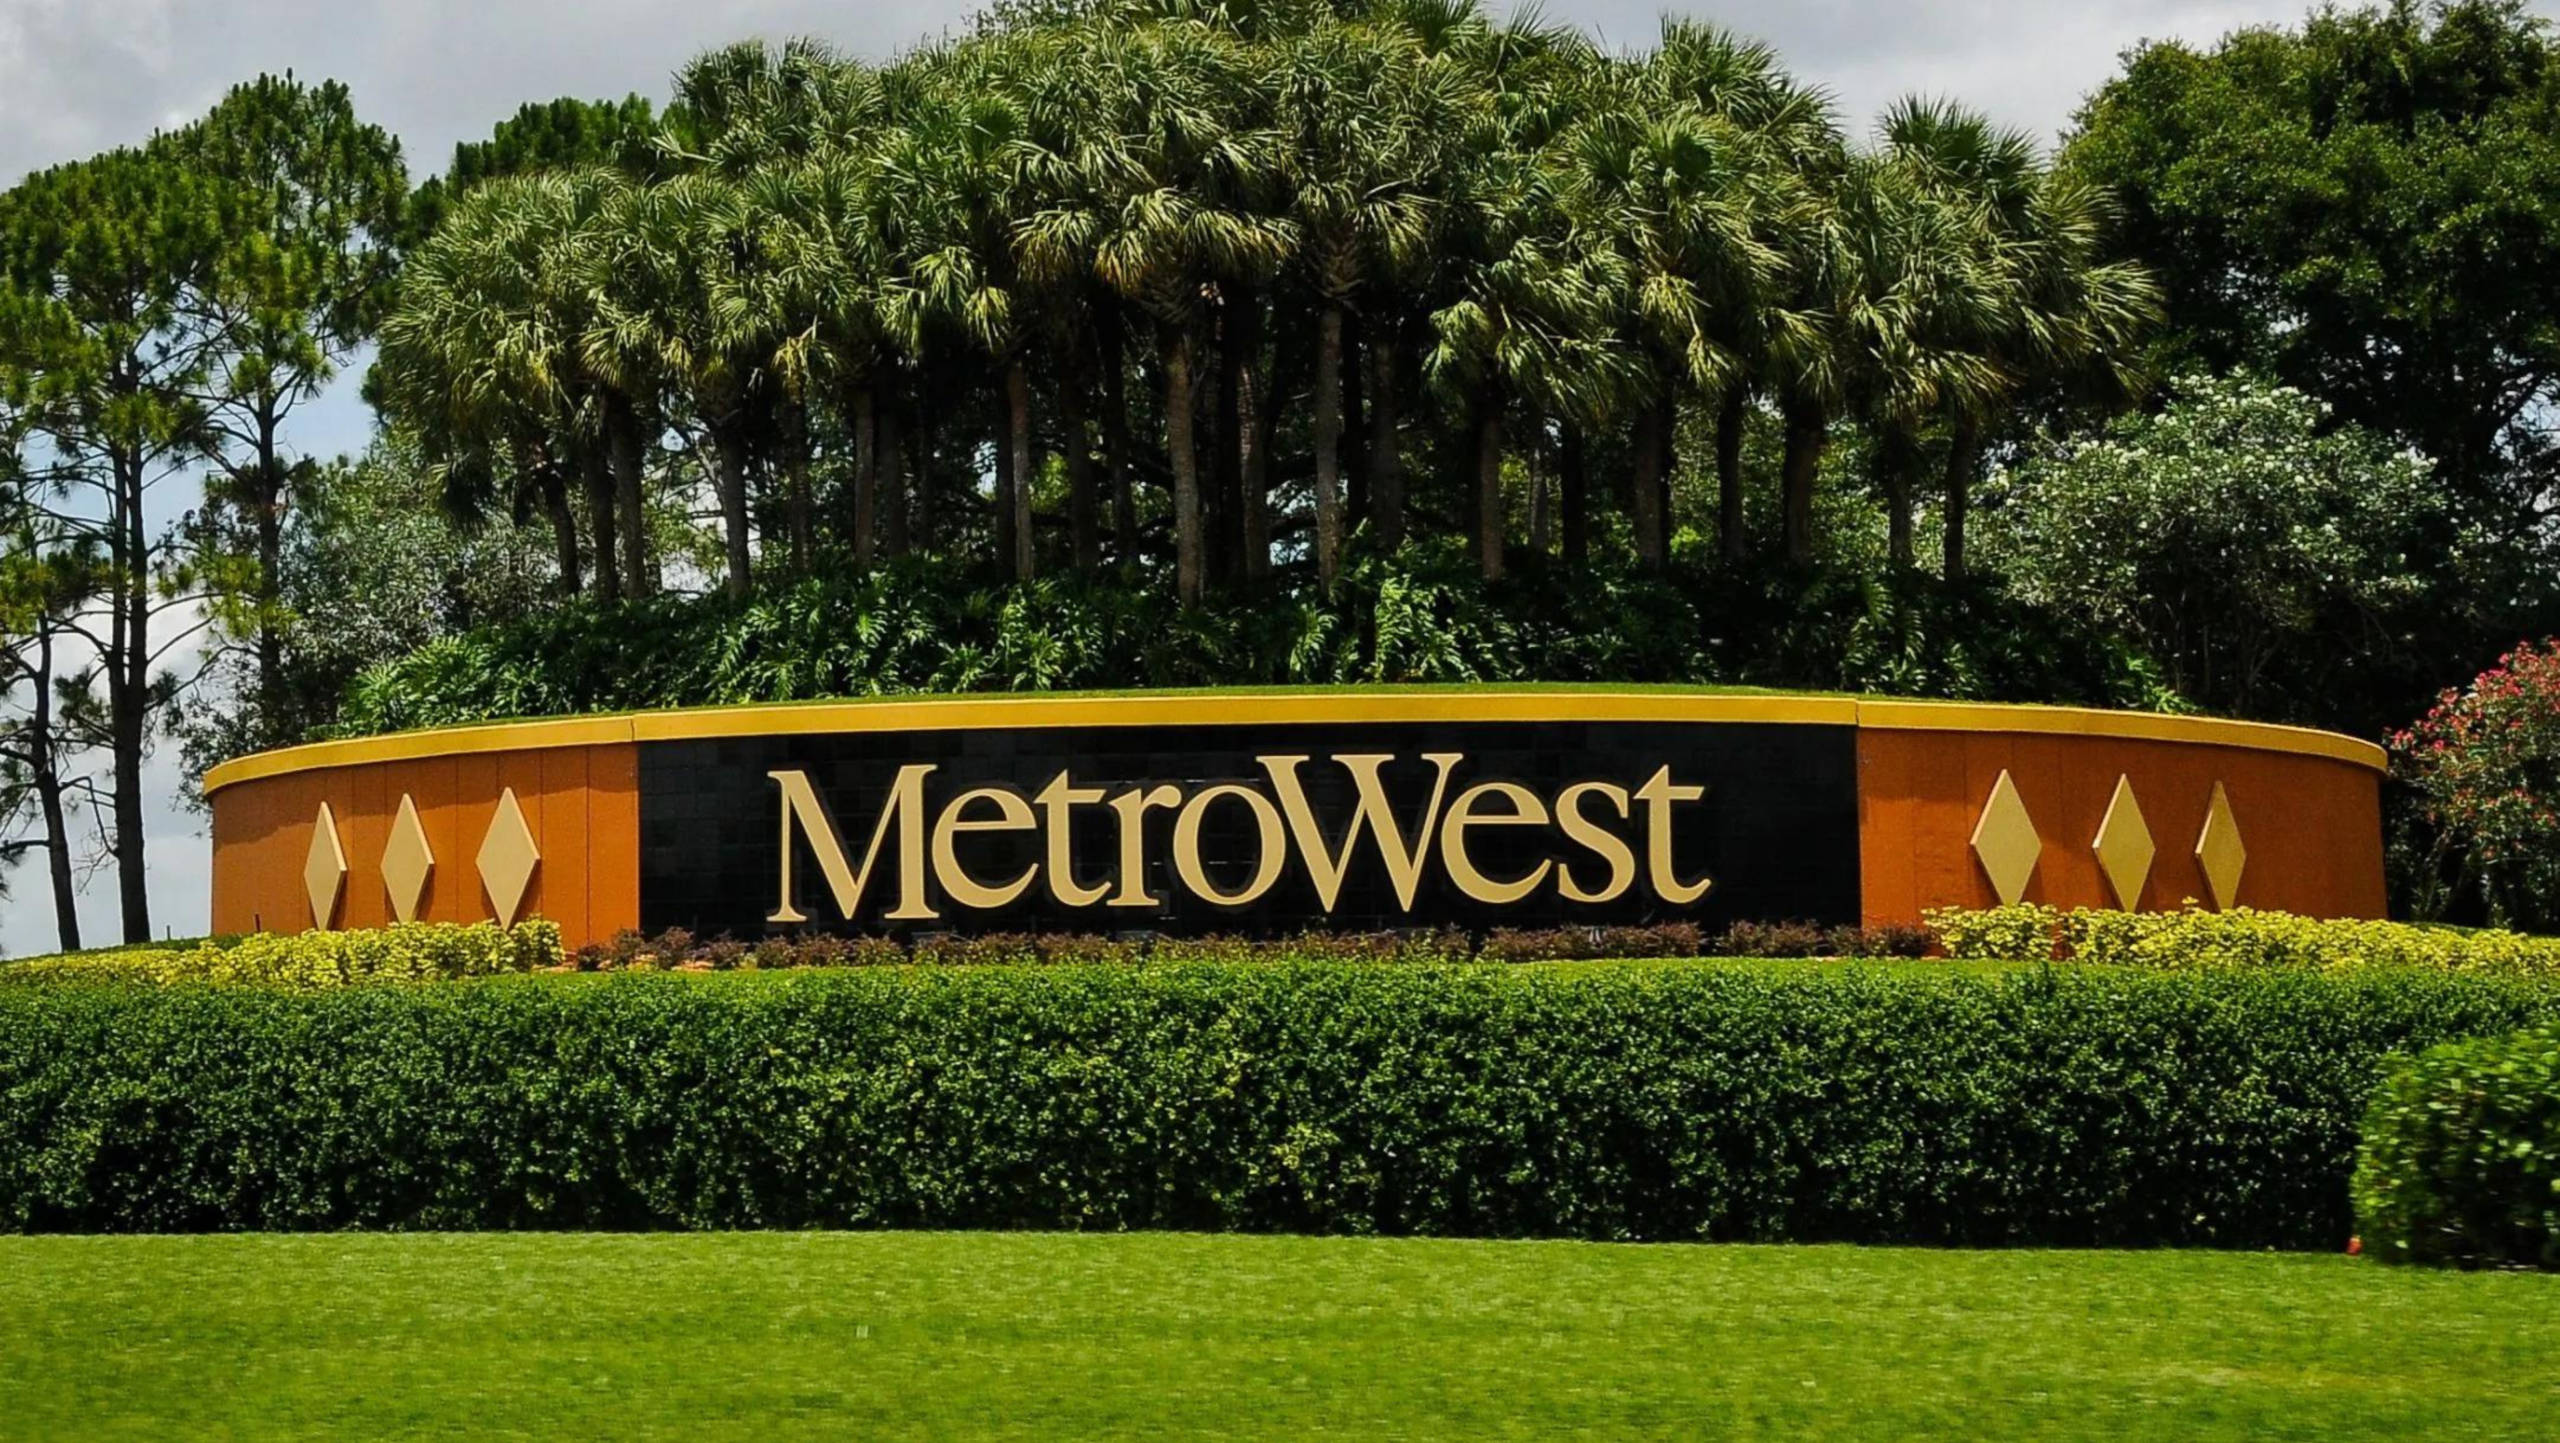 Conheça algumas das melhores escolas em Orlando! - BJR Investments